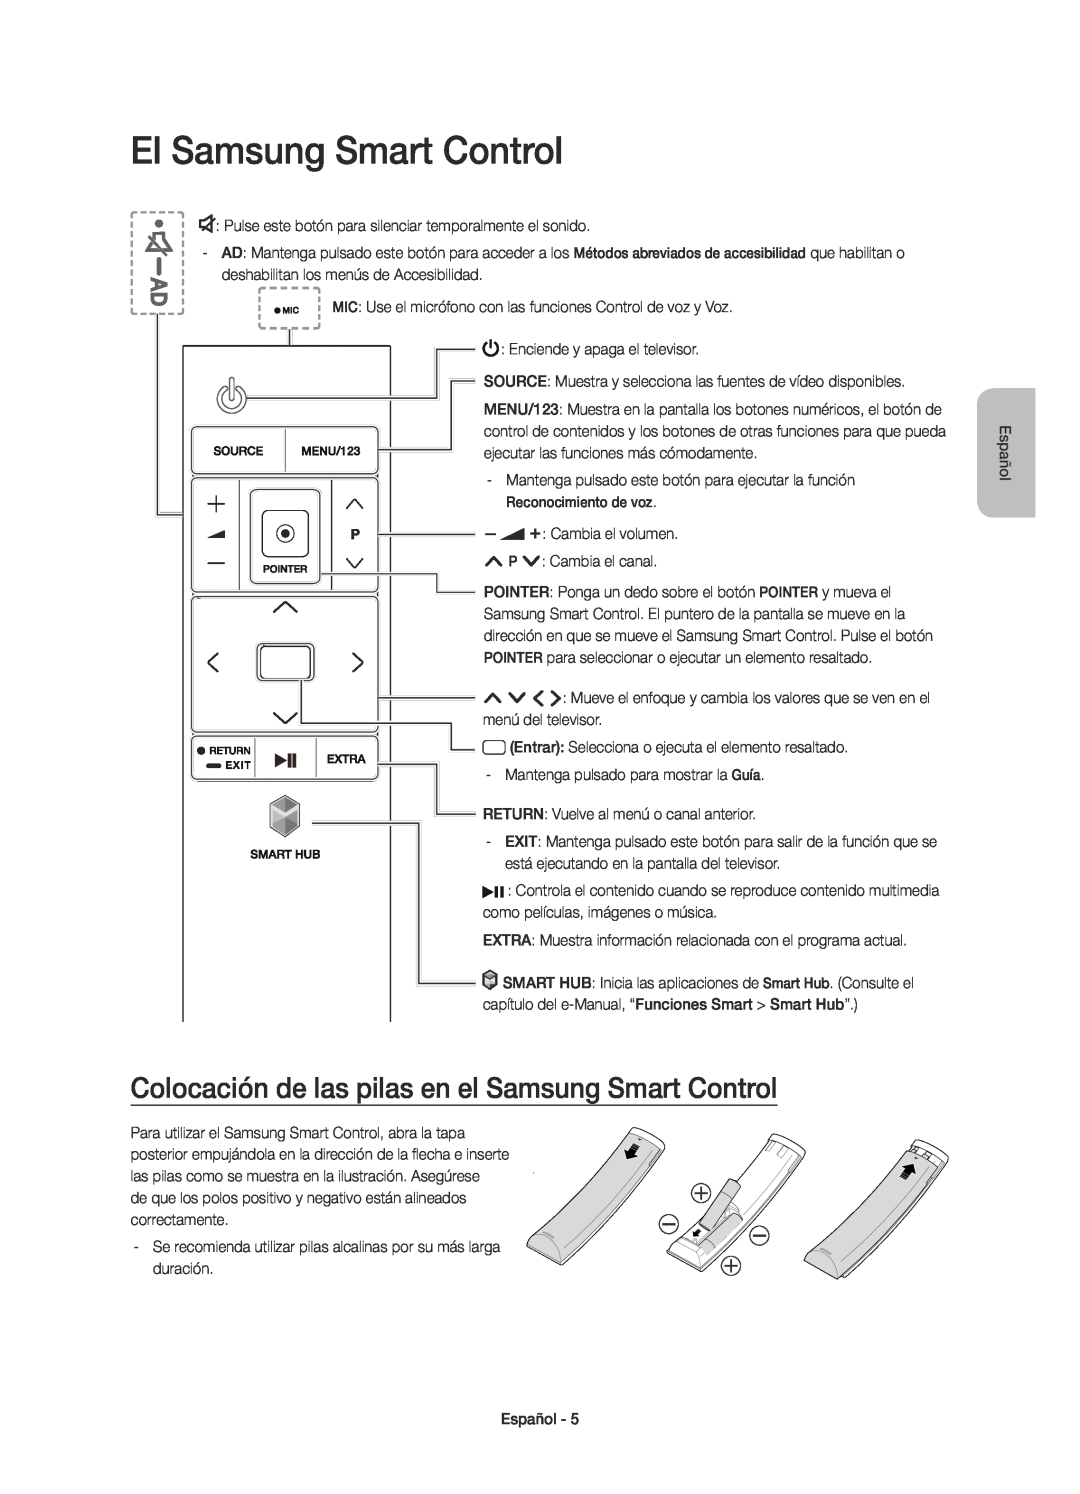 Samsung UE40JU7000TXXU, UE40JU7000TXZF manual El Samsung Smart Control, Colocación de las pilas en el Samsung Smart Control 